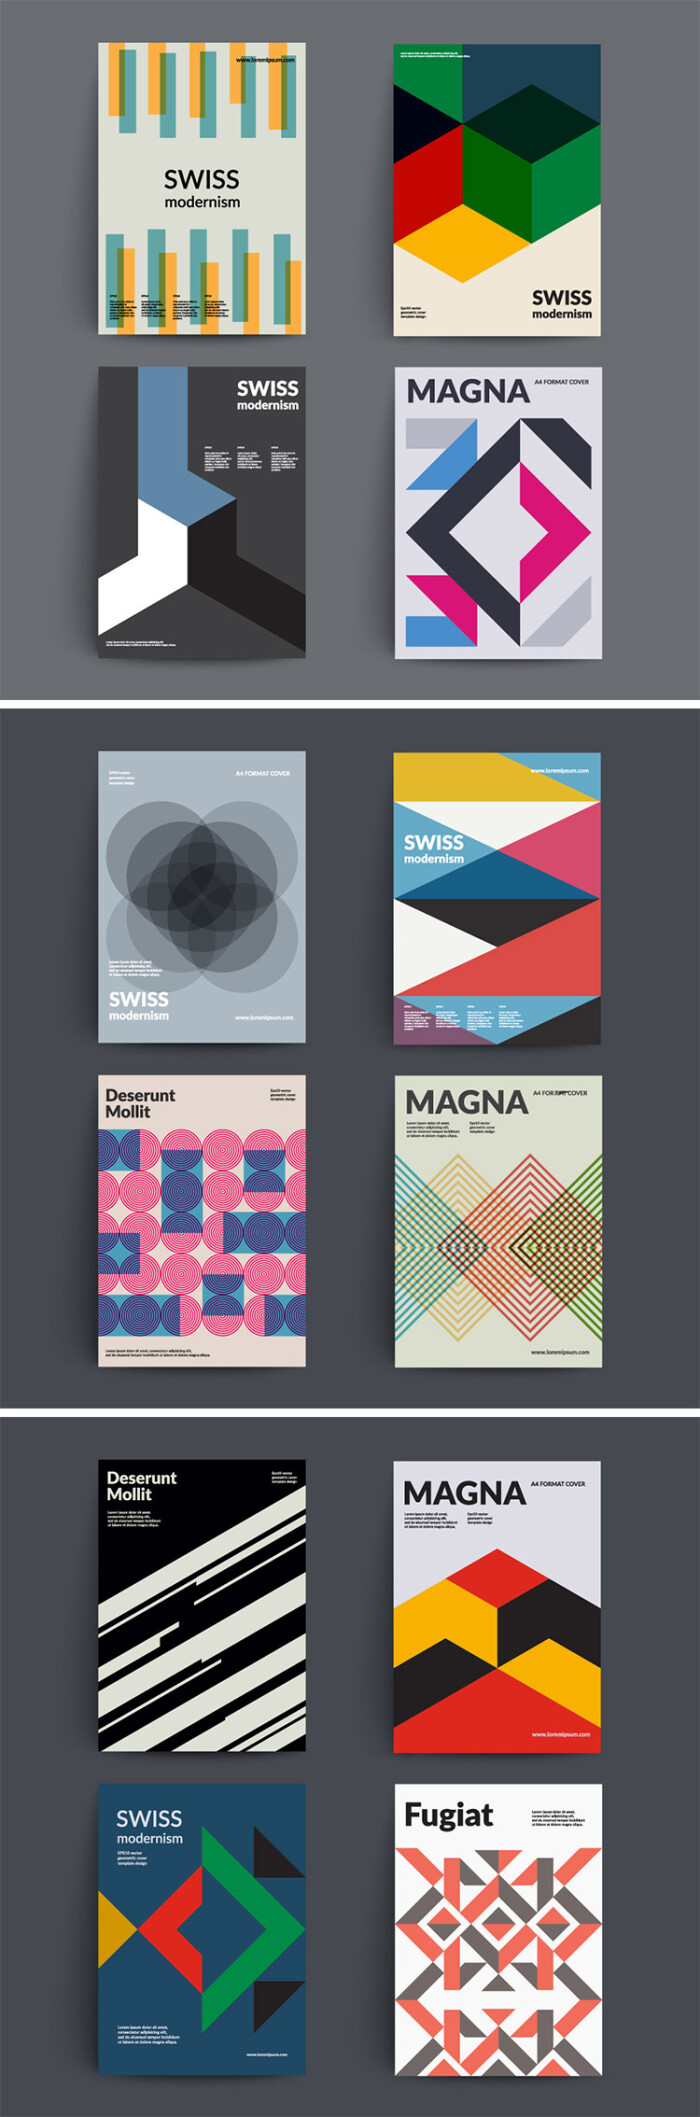 欧美几何创意潮流简约创意图案海报杂志封面传单精品设计矢量素材